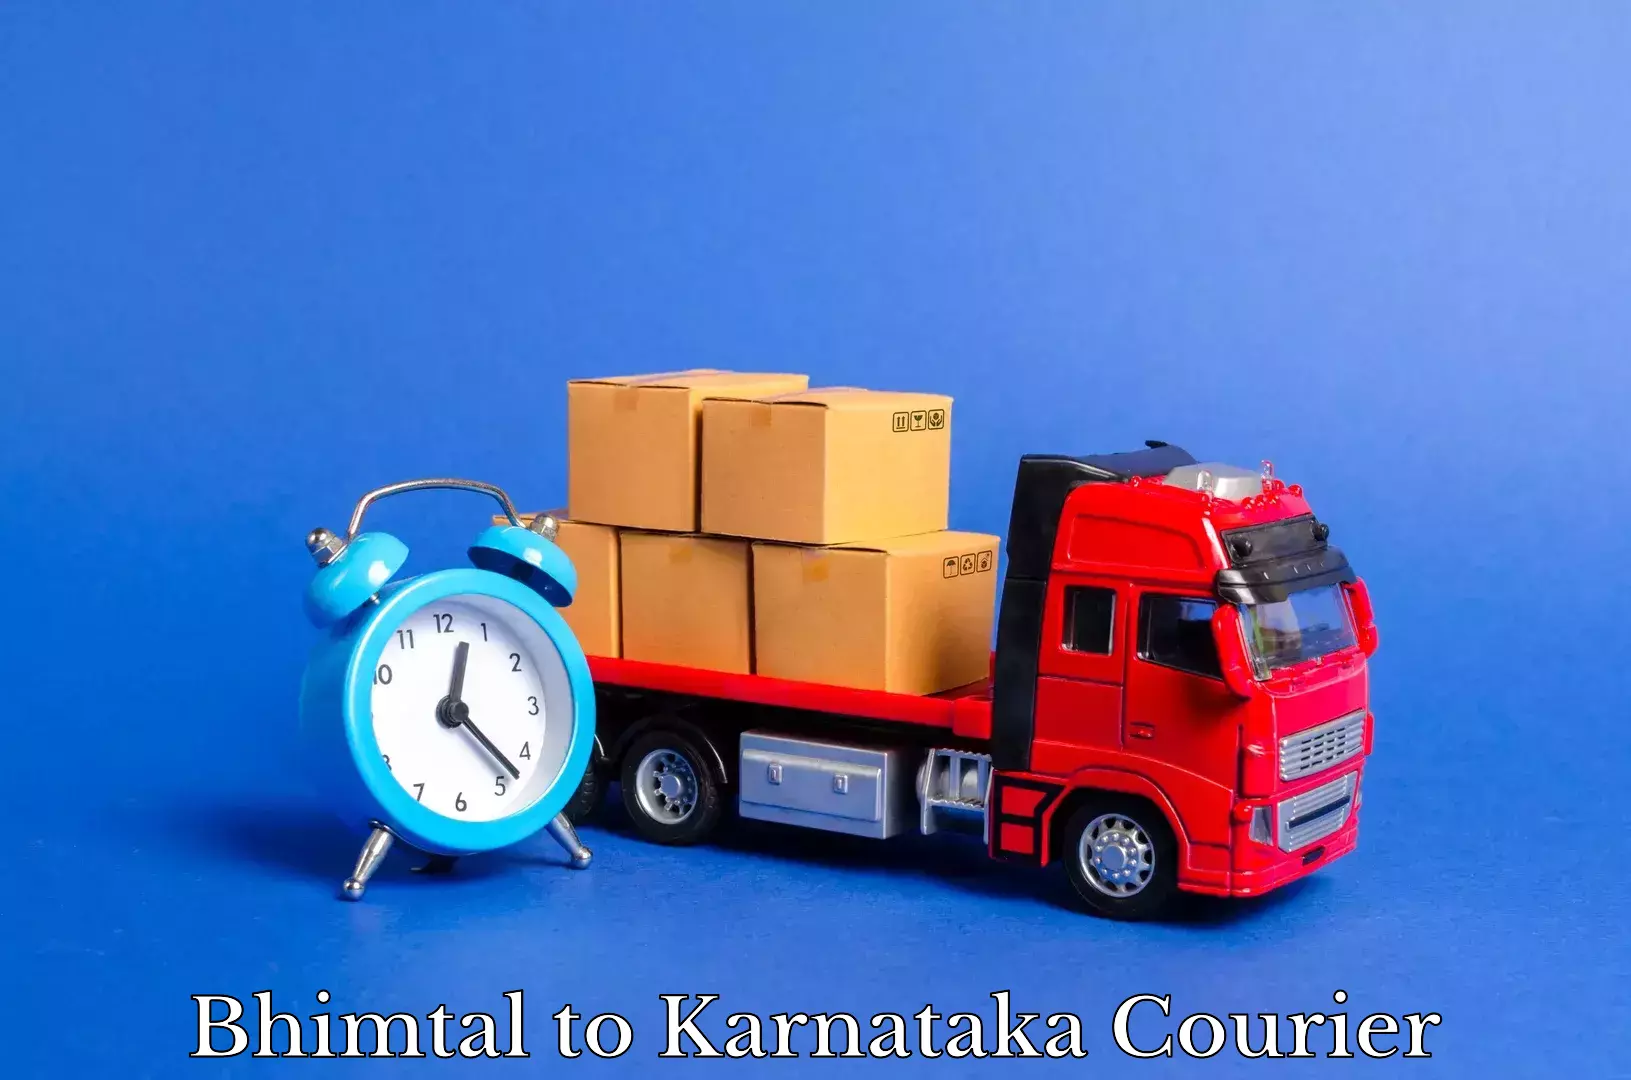 Trusted furniture transport Bhimtal to Kanjarakatte